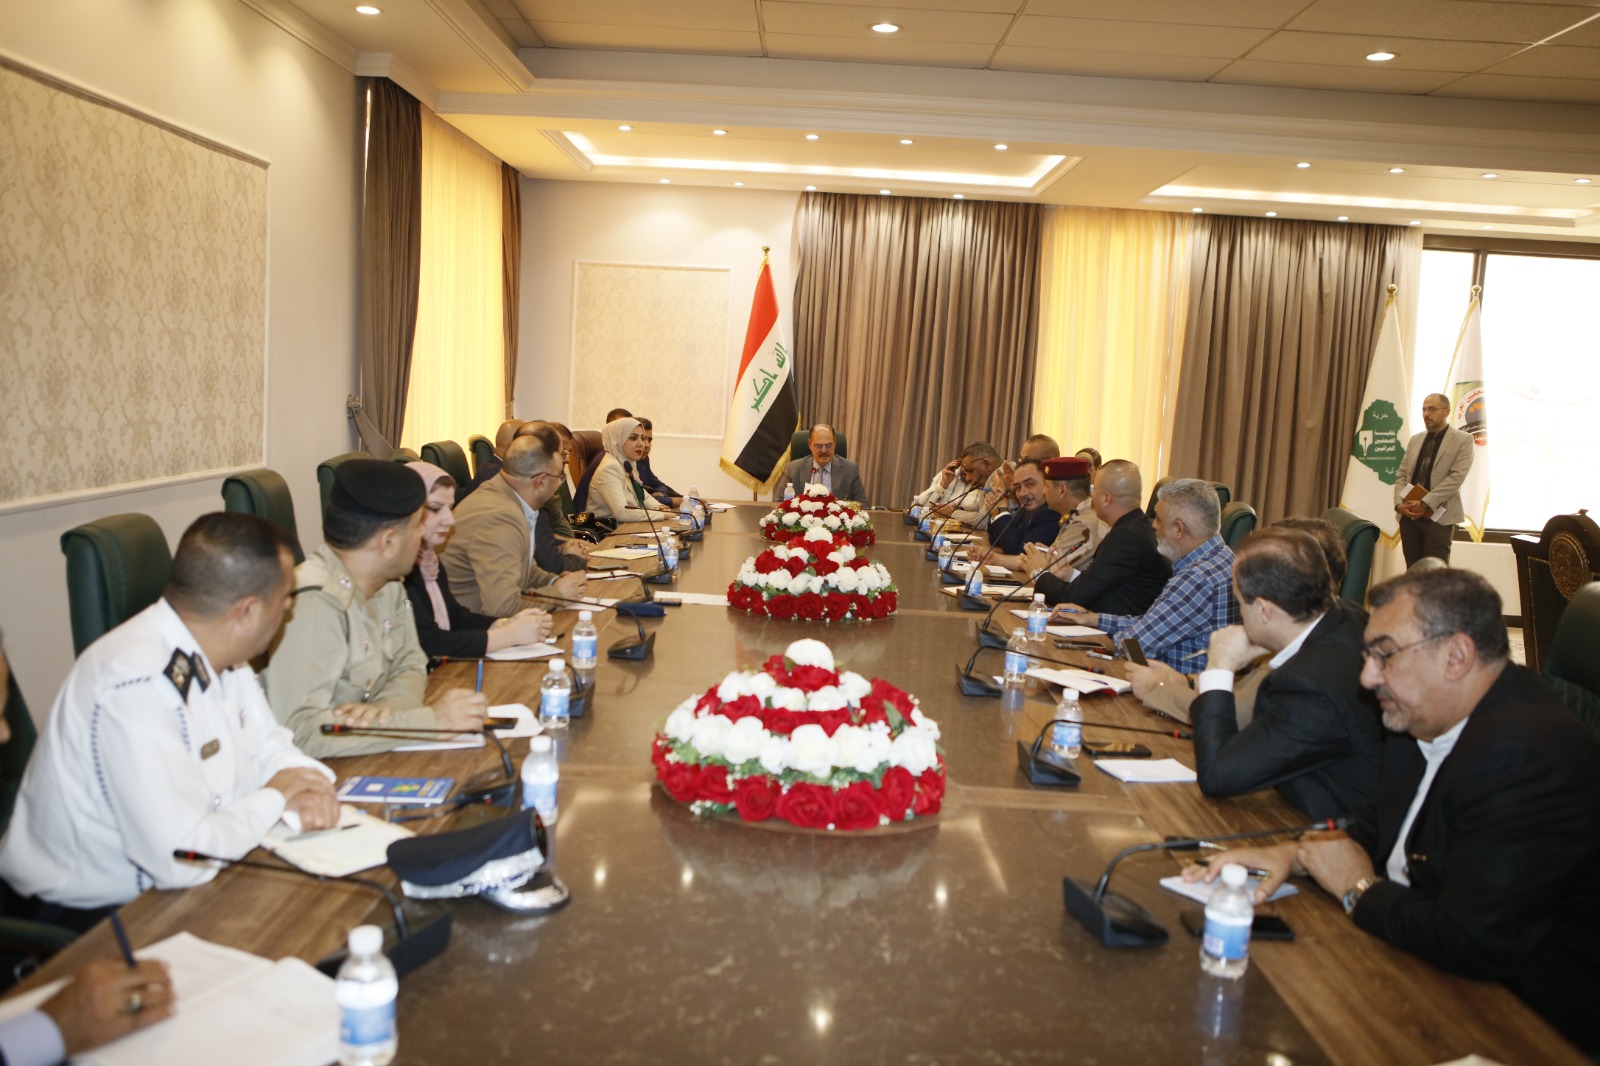 اللجنة العليا الخاصة بالتحضير لاحتفالات العيد الوطني للصحافة العراقية تنهي استعداداتها للبدء بتنفيذ المنهاج الخاص بالاحتفالات